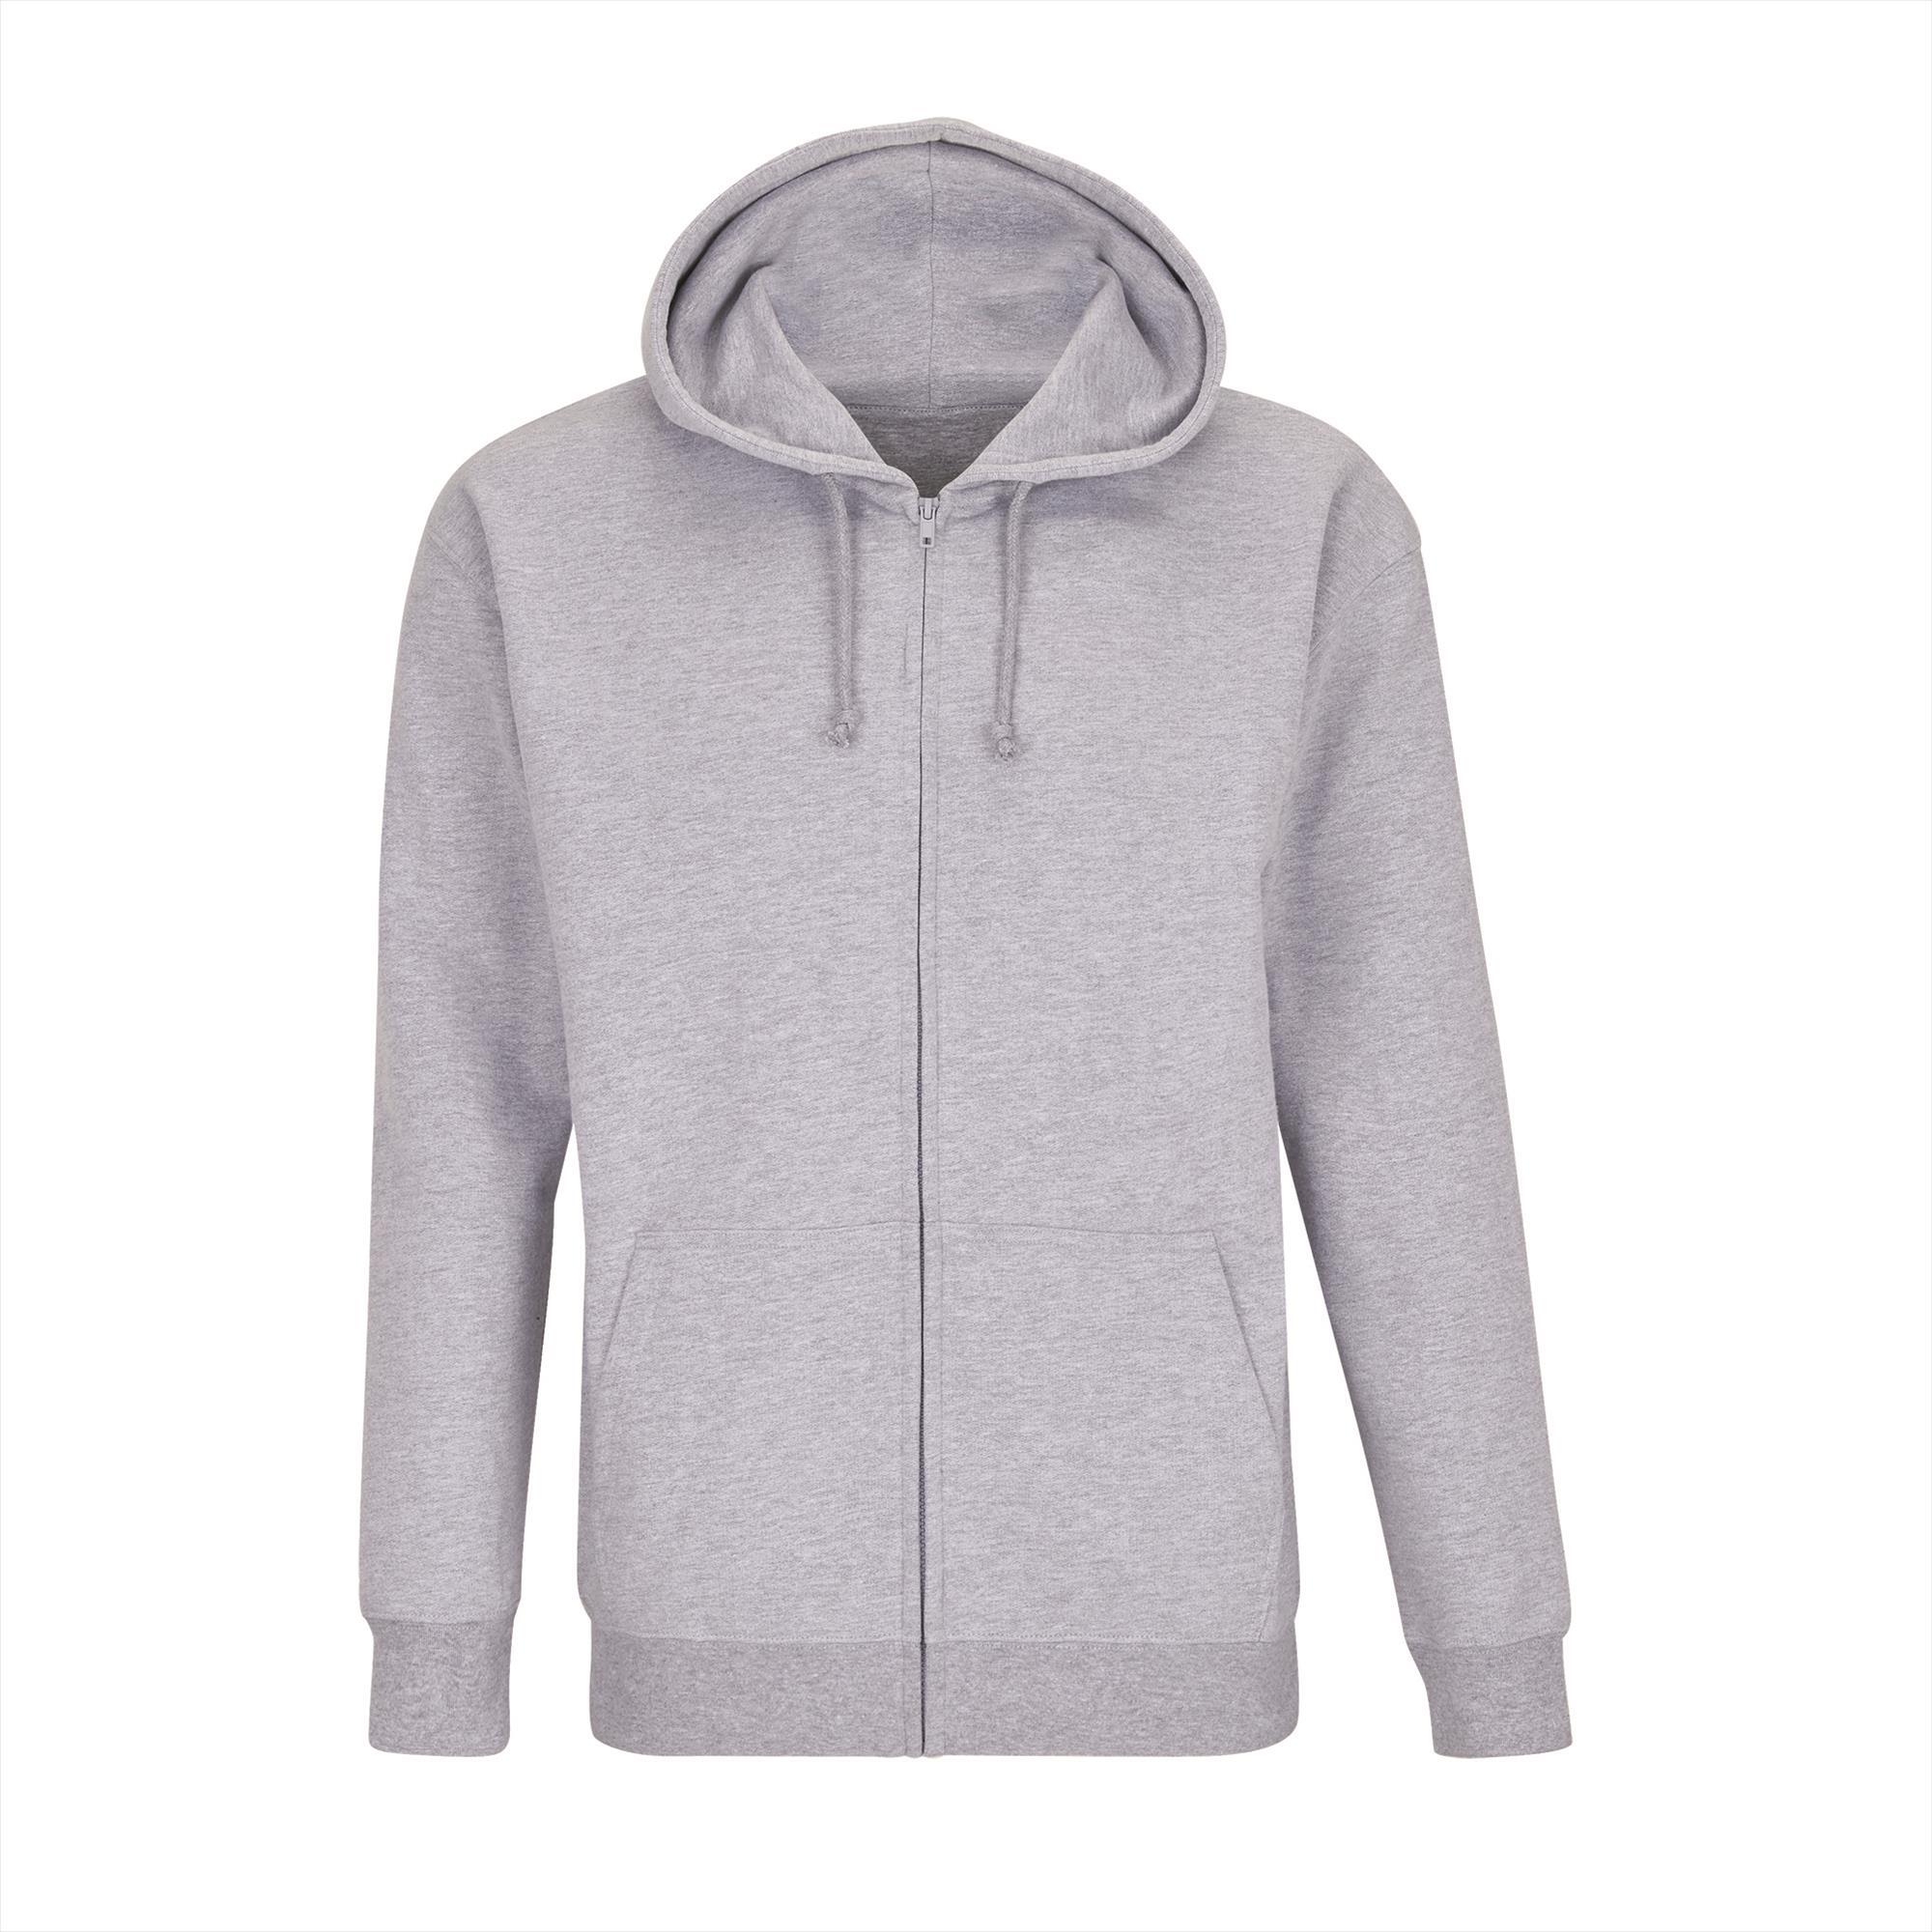 Hoodie comfortabele unisex hoodie grijs melange